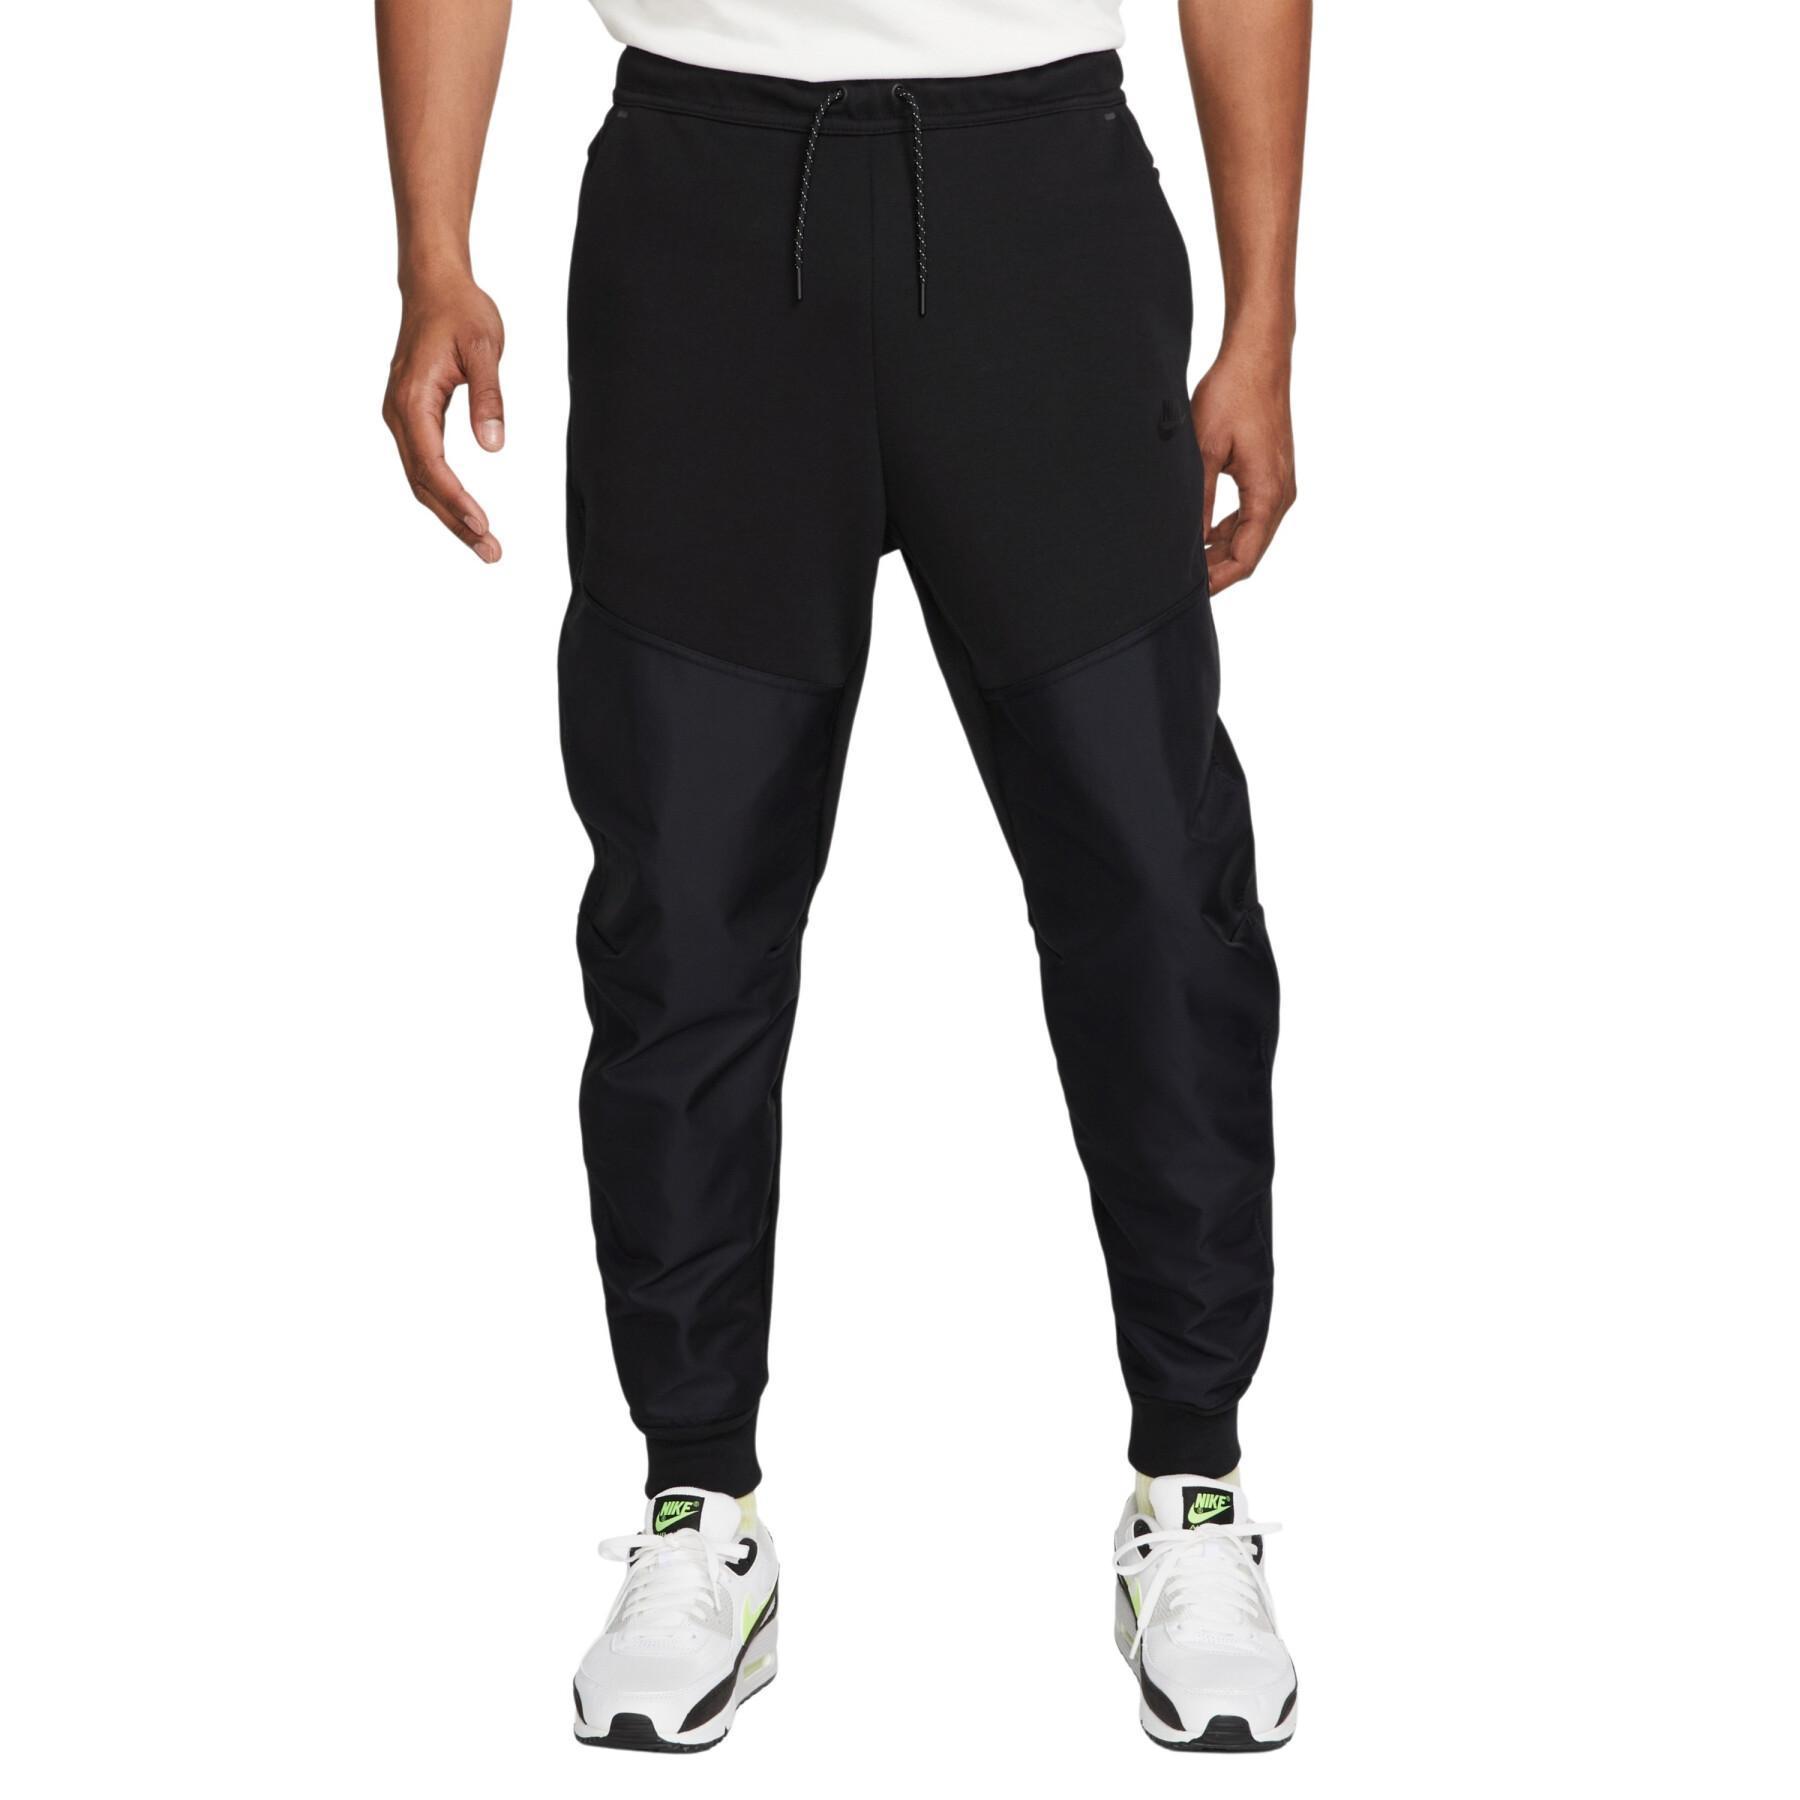 Pantalón de jogging Nike Tech Overlay